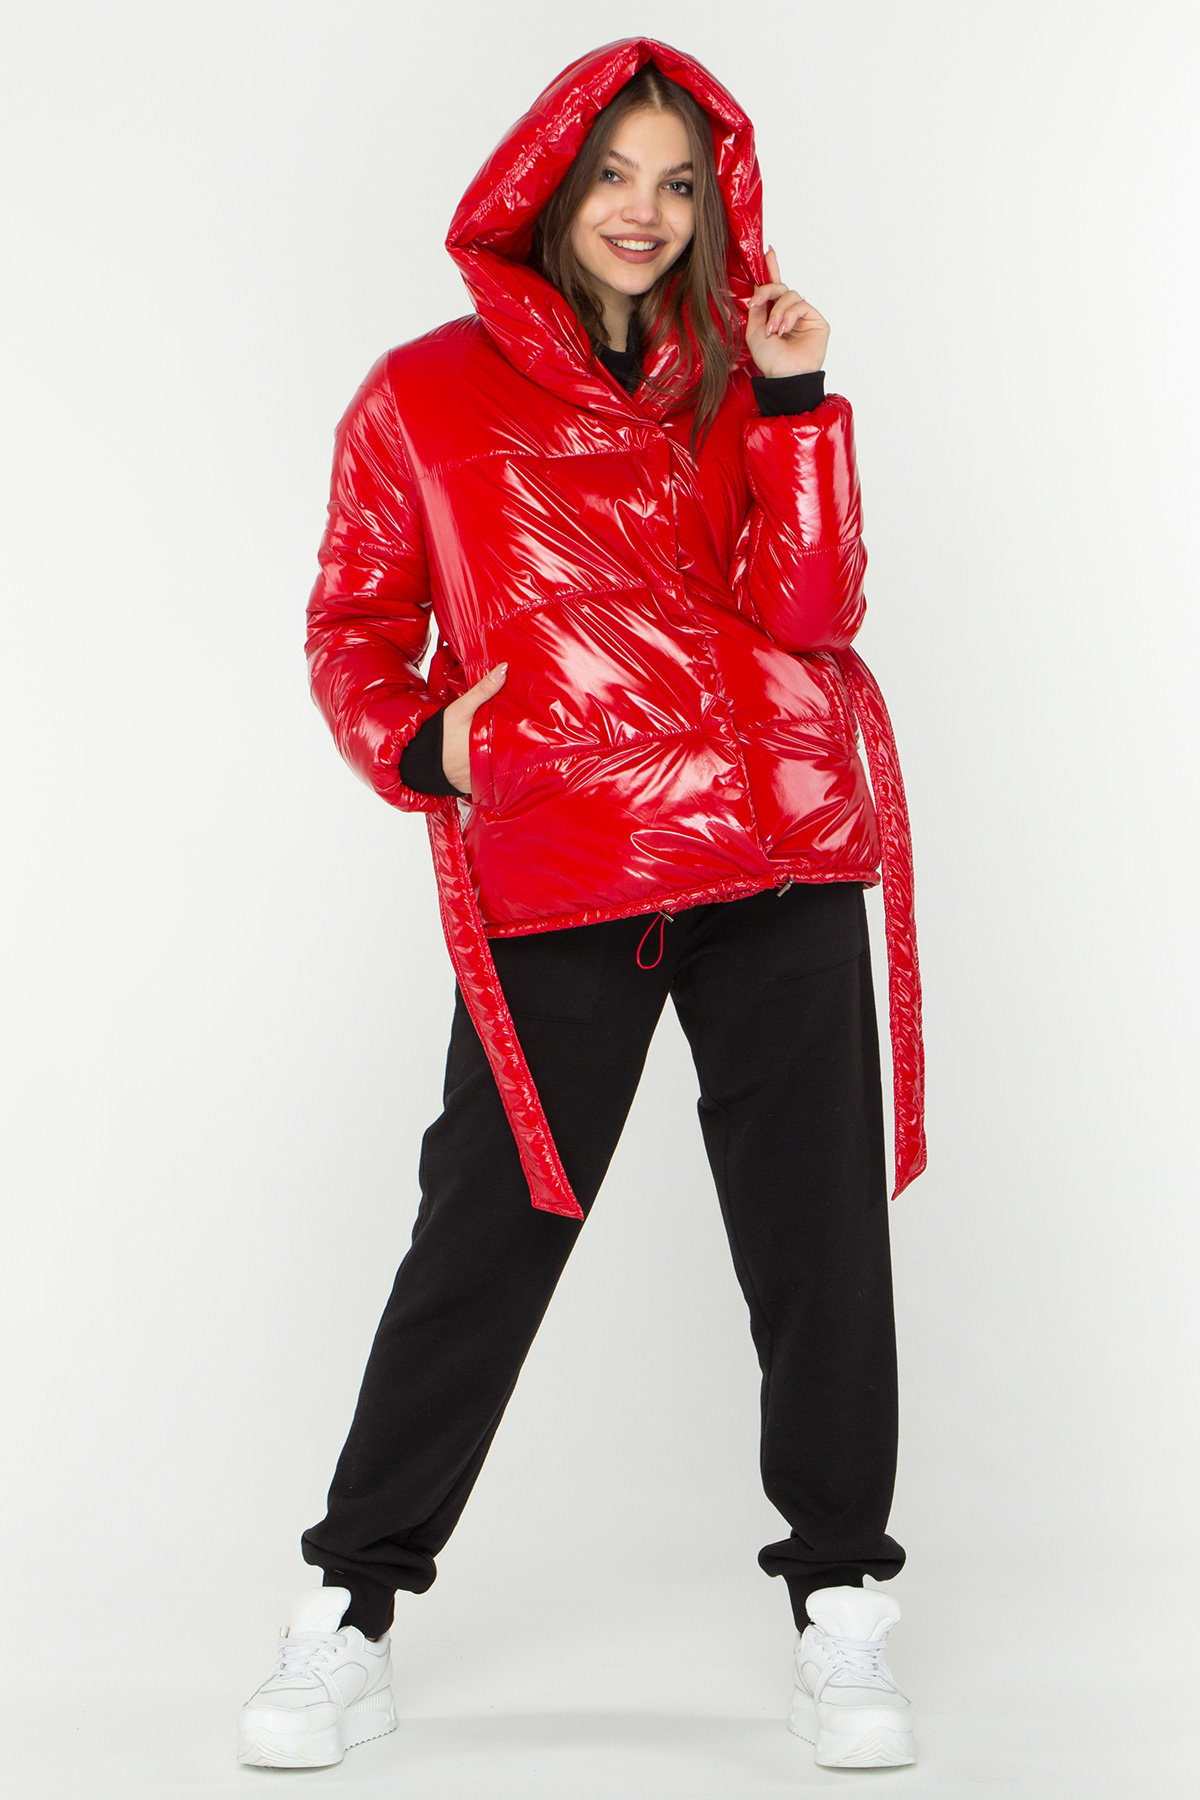 Лаковая куртка пуховик с поясом Бумер 8696 АРТ. 45034 Цвет: Красный - фото 3, интернет магазин tm-modus.ru